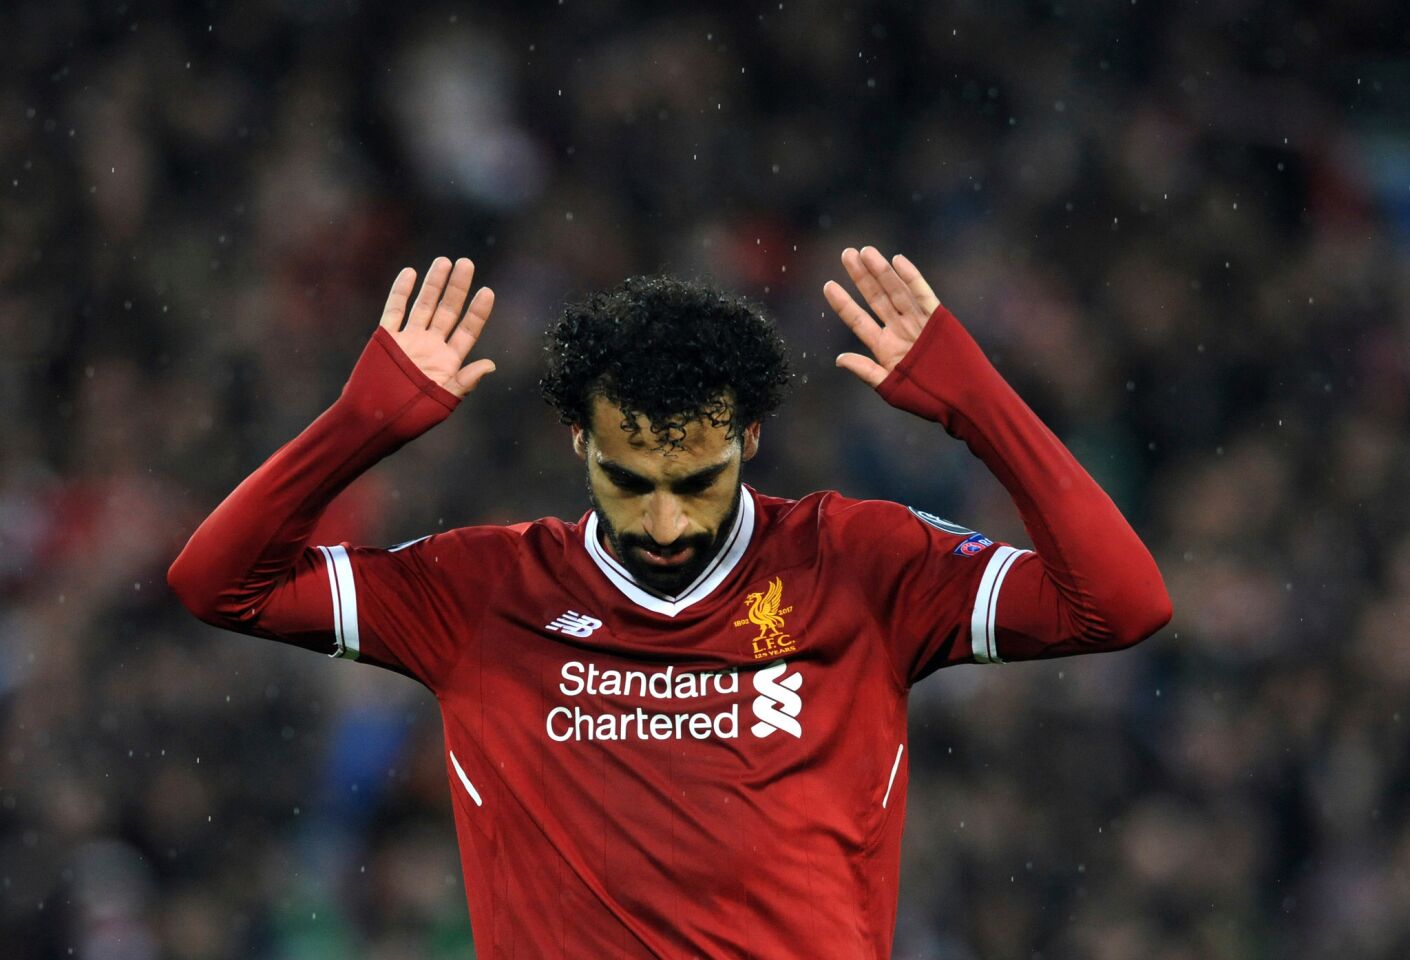 El delantero egipcio Mohamed Salah tras anotar el segundo gol de Liverpool en el partido ante la Roma por la ida de la semifinal de la Liga de Campeones, en Liverpool, el martes 24 de abril de 2018. (AP Foto/Rui Vieira) ** Usable by HOY, ELSENT and SD Only **